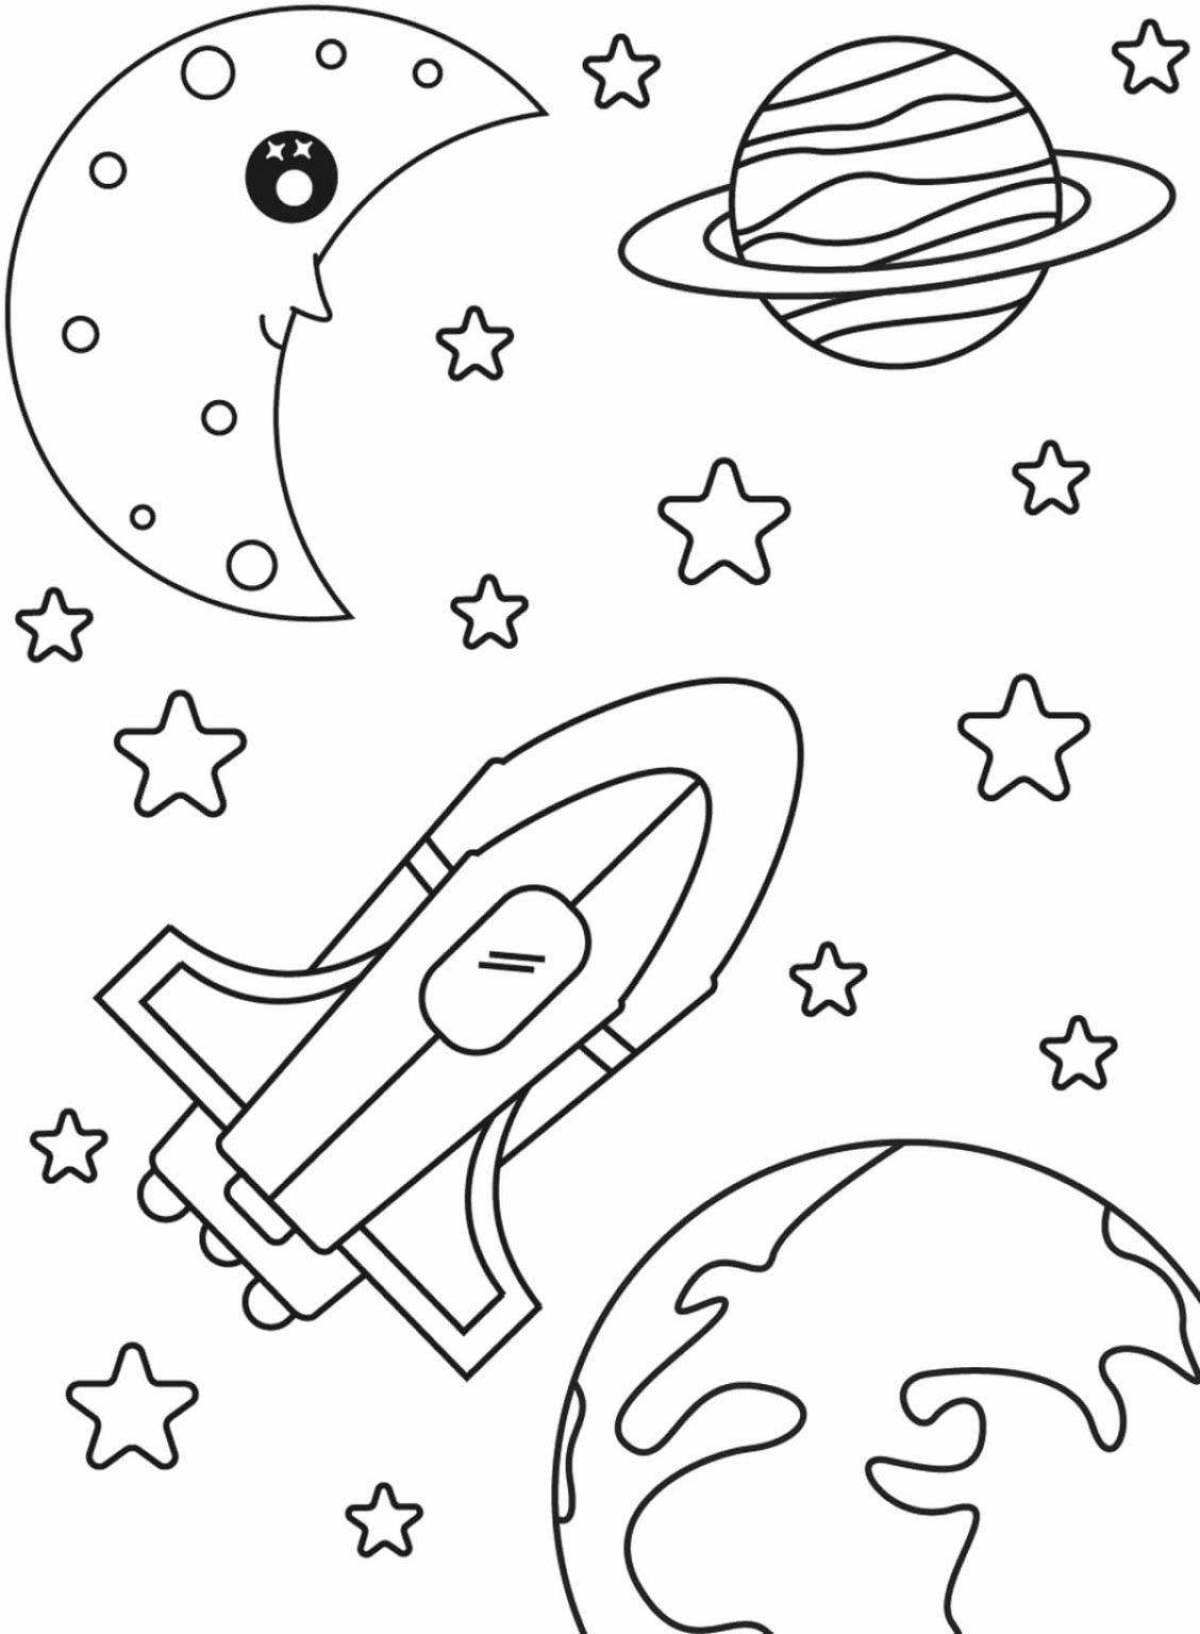 Увлекательная космическая раскраска для детей 5-6 лет